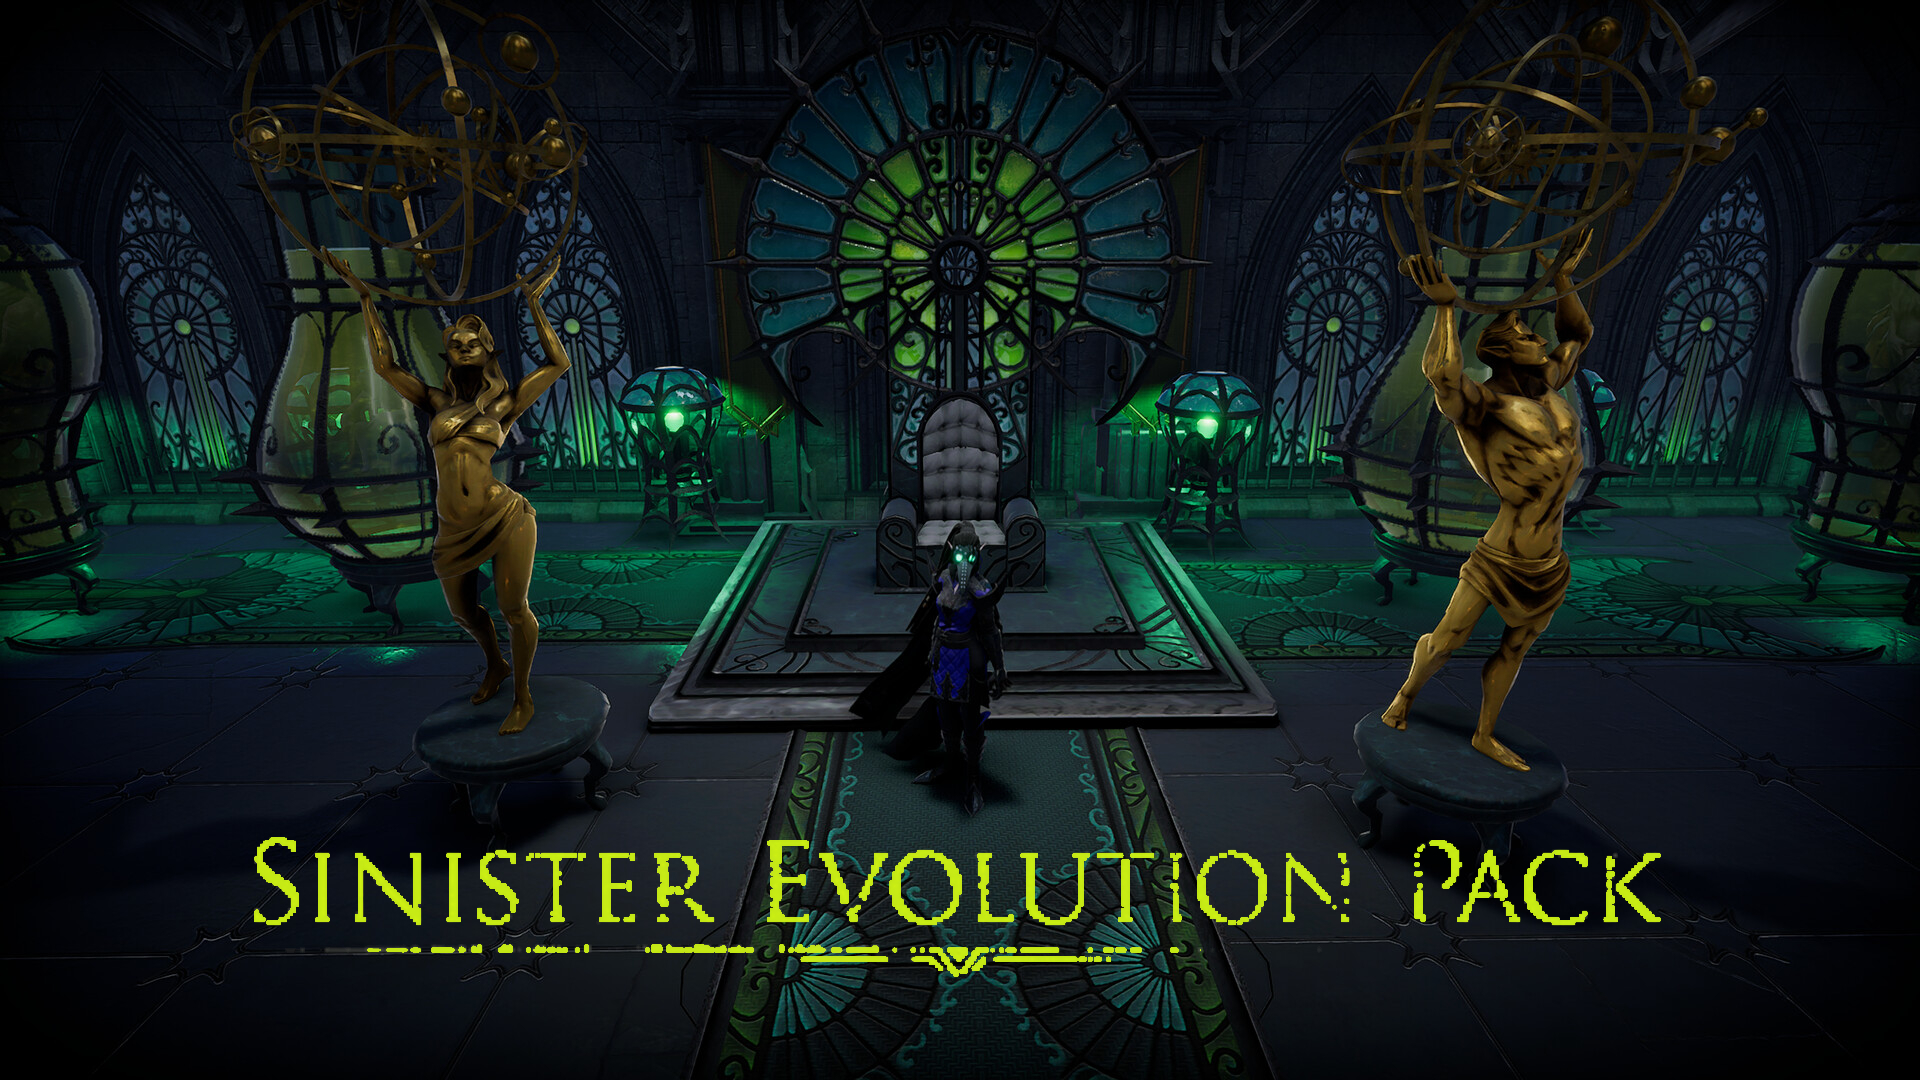 Sinister Evolution Pack DLC Image